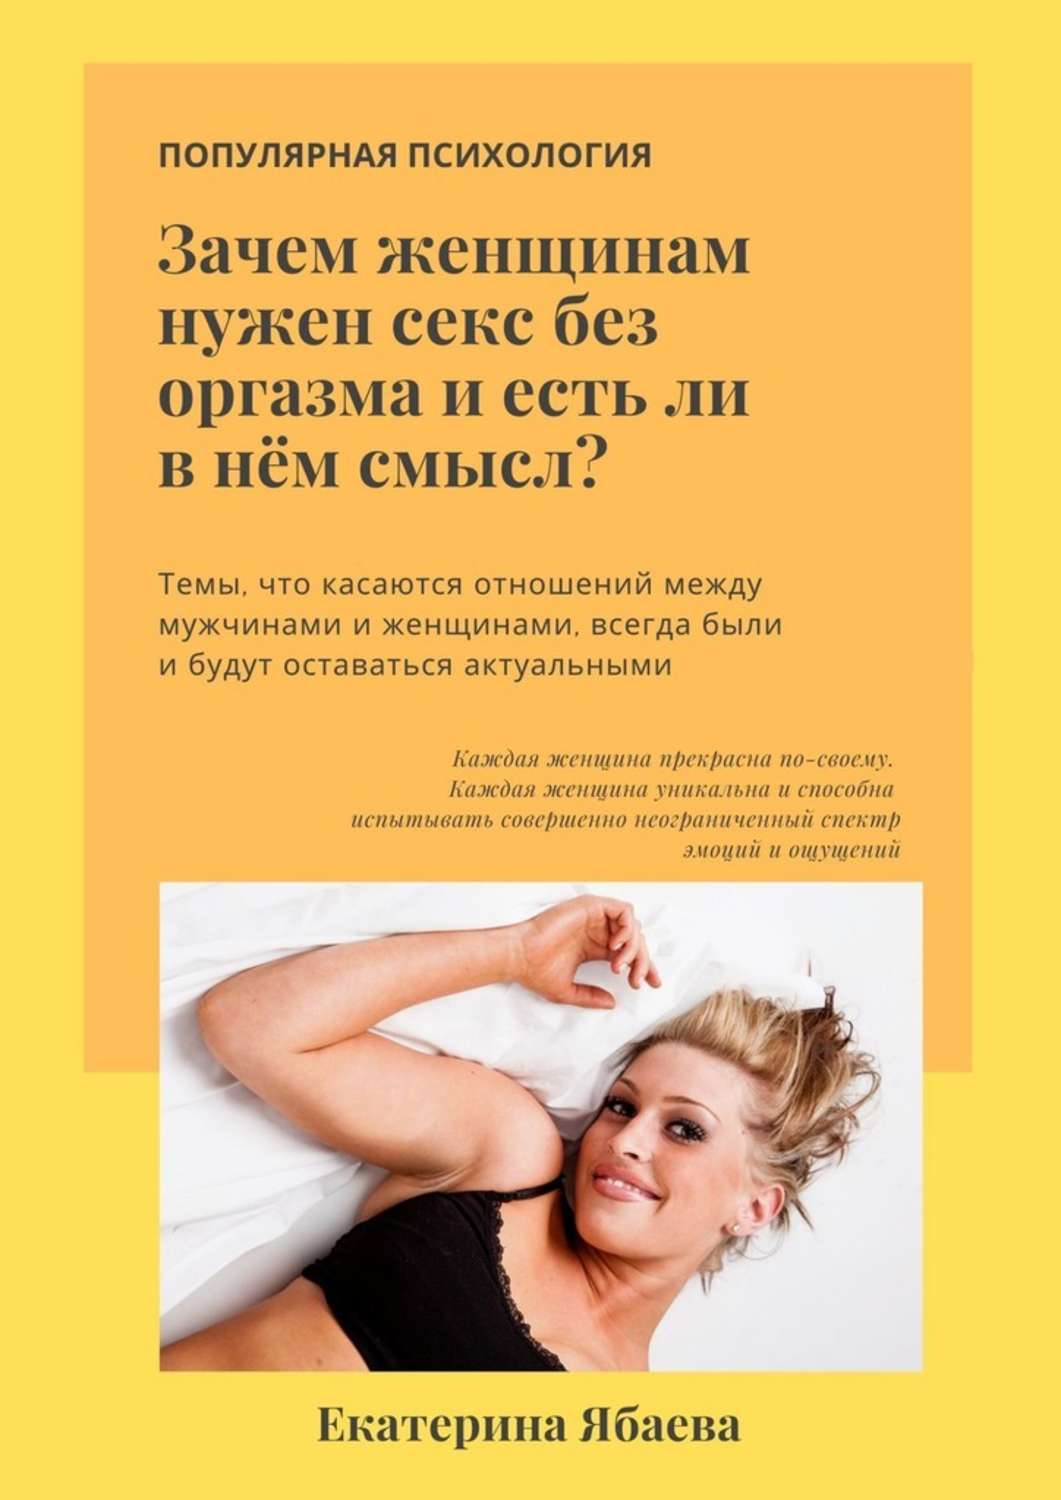 Парням нужен только секс - 71 ответ - Форум Леди optnp.ru